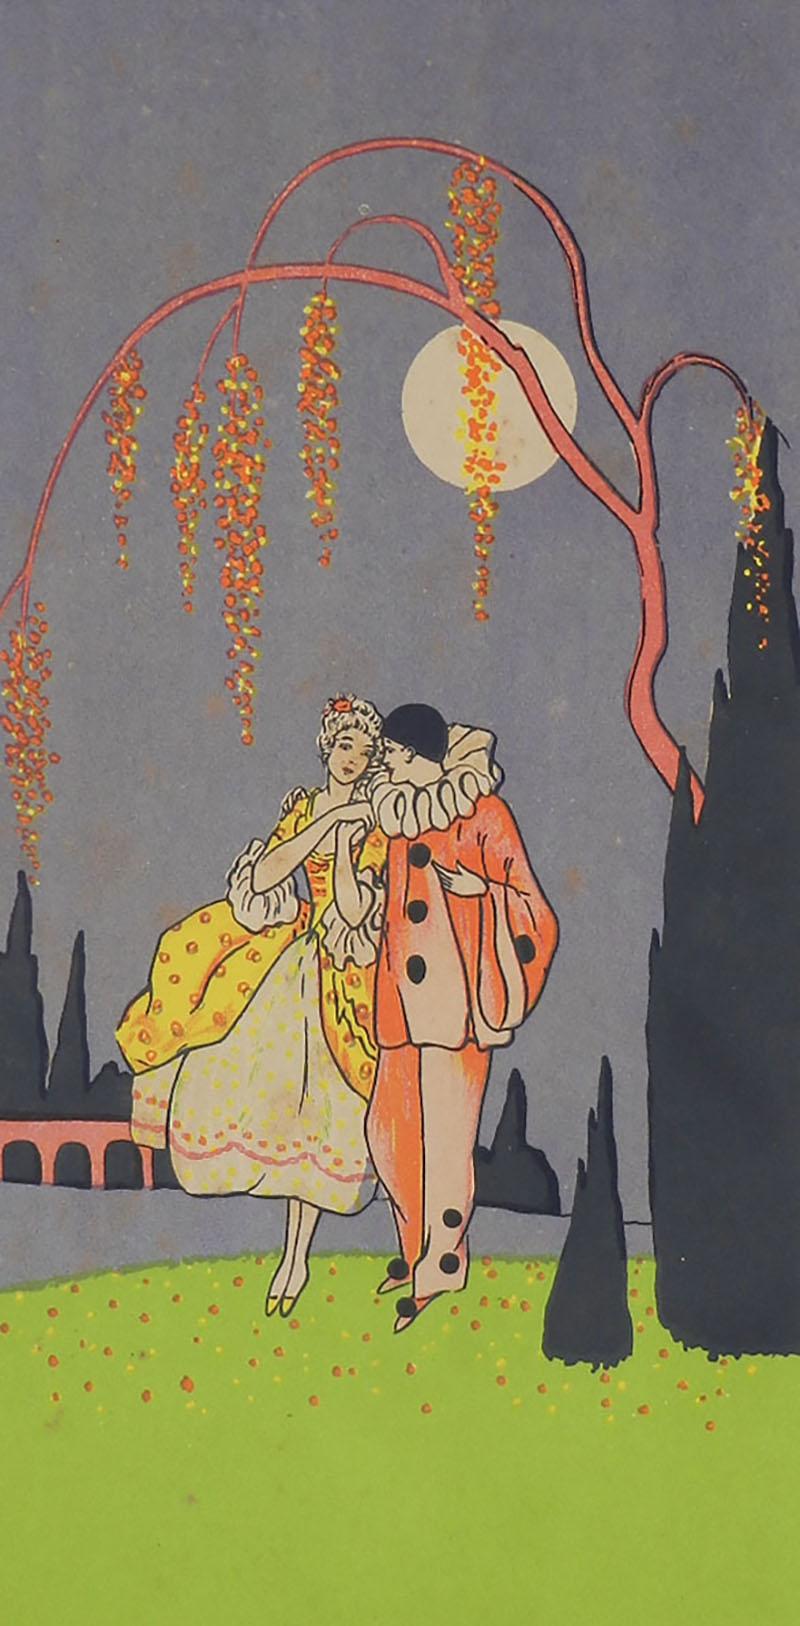 Pair of French Decorative Art Deco Drucke von Pierrot und Colombine ca. 1930 preislich einzeln verkaufen jede separat bitte angeben, welche Sie erhalten möchten
In ihren Originalrahmen
Tatsächliche Bilder messen 37cm 14.56ins hoch 18.5cms 7.28ins